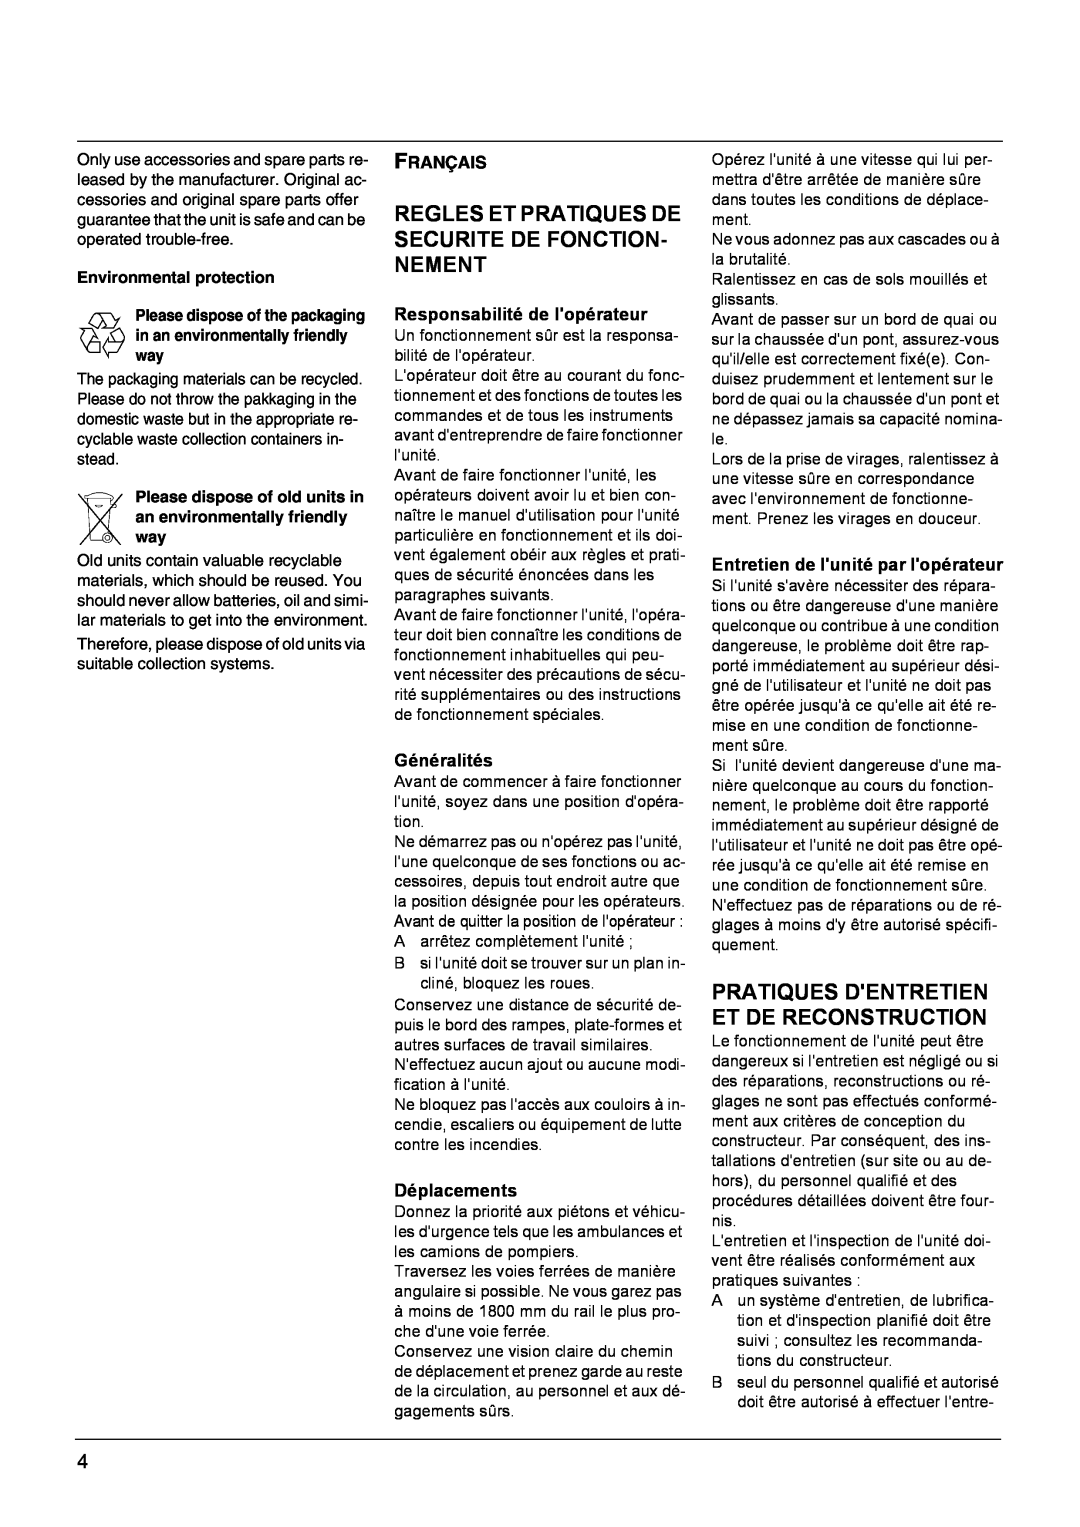 Windsor Sweepers manual Pratiques Dentretien Et De Reconstruction, Français, Responsabilité de lopérateur, Généralités 